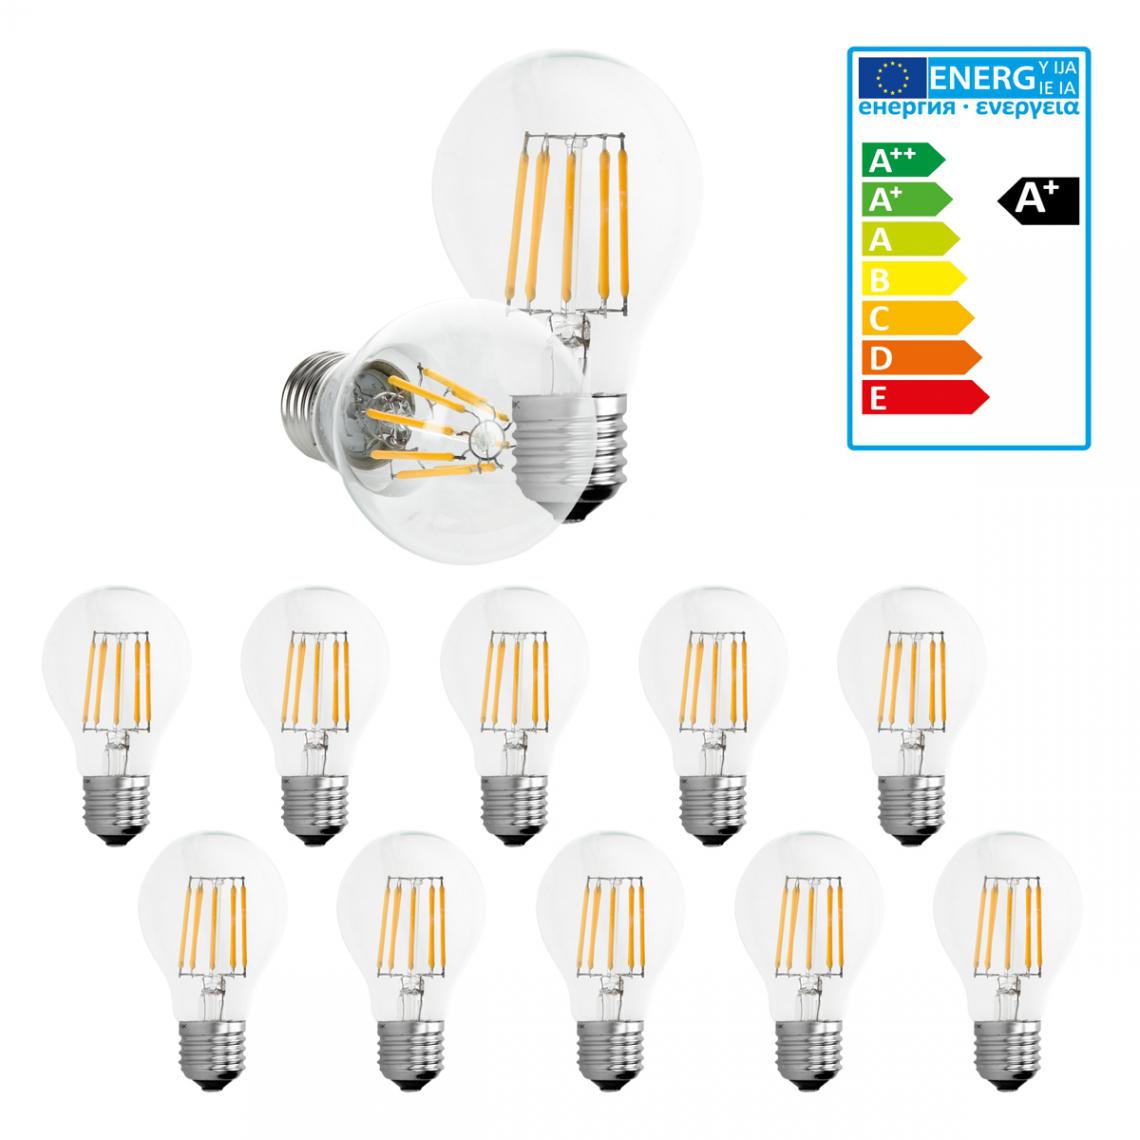 Ecd Germany - ECD Germany 10 x LED Filament de l'ampoule E27 classique Edison 8W 816 lumens angle de faisceau de 120 ° AC 220-240 reste caché et remplace 45W Lampe incandescent à lumière blanche chaude - Ampoules LED